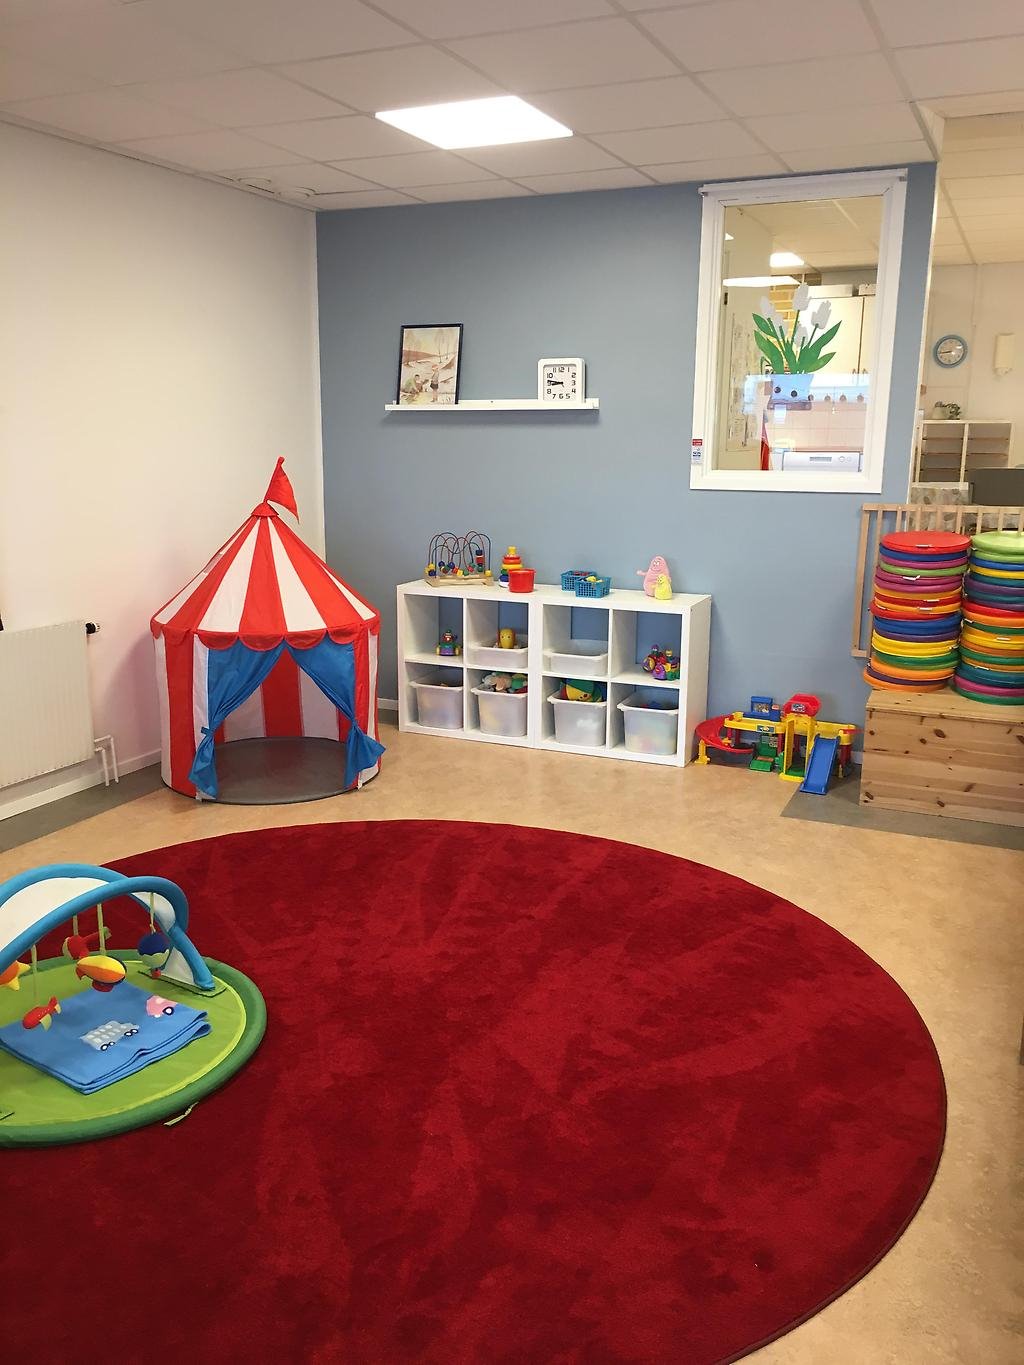 Rum med en stor rund matta i mitten. På mattan står ett babygym, i hörnet finns ett leksakstält och bredvid en hylla fylld med leksaker.